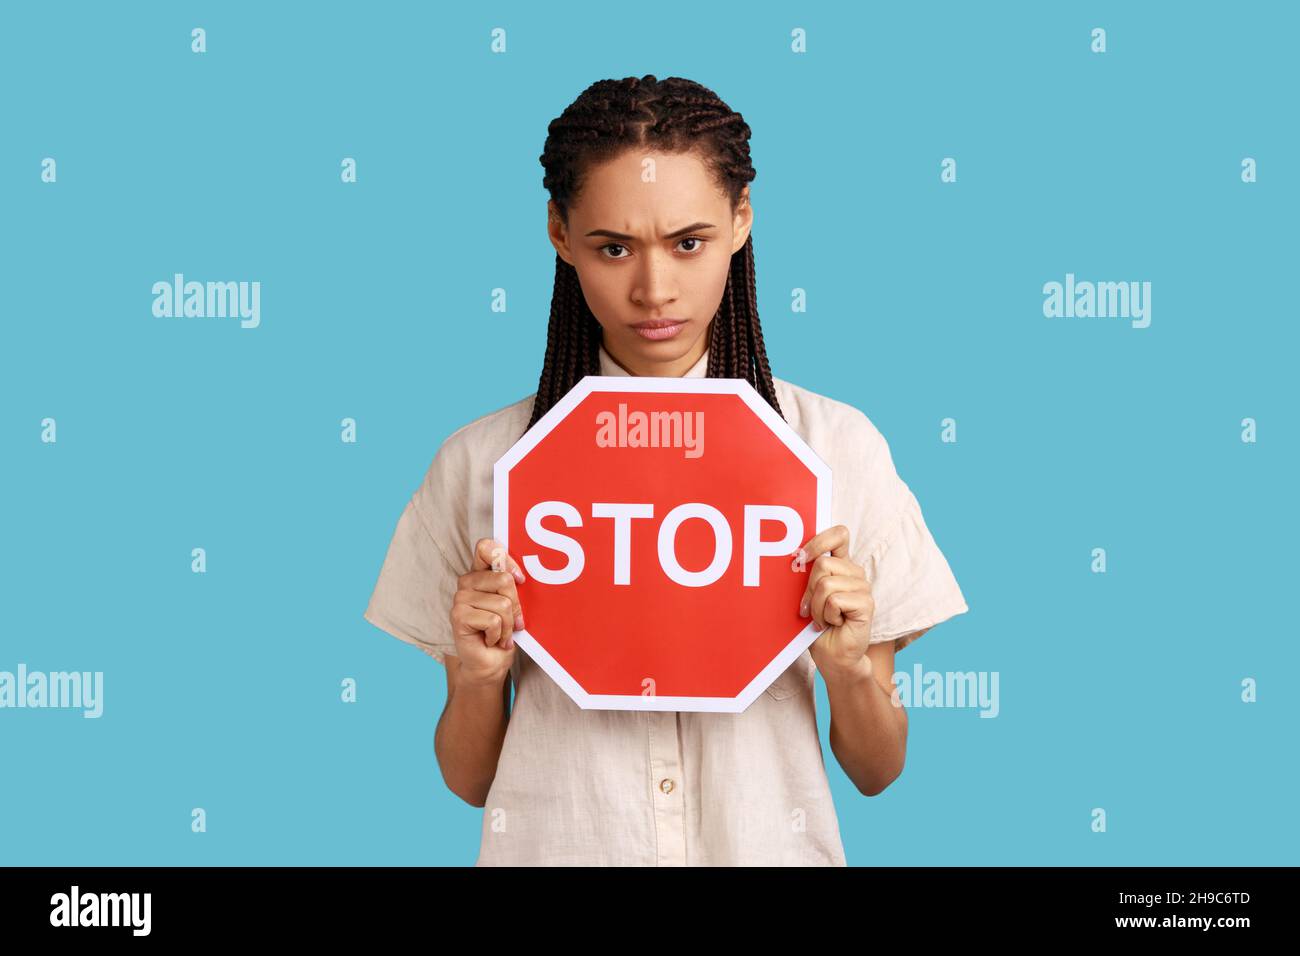 Porträt einer wütenden Frau mit Dreadlocks, die das rote Stoppschild halten, die Kamera mit negativem aggressiven Ausdruck betrachten, Verbotszeichen zeigen und ein weißes Hemd tragen. Innenaufnahme des Studios isoliert auf blauem Hintergrund Stockfoto